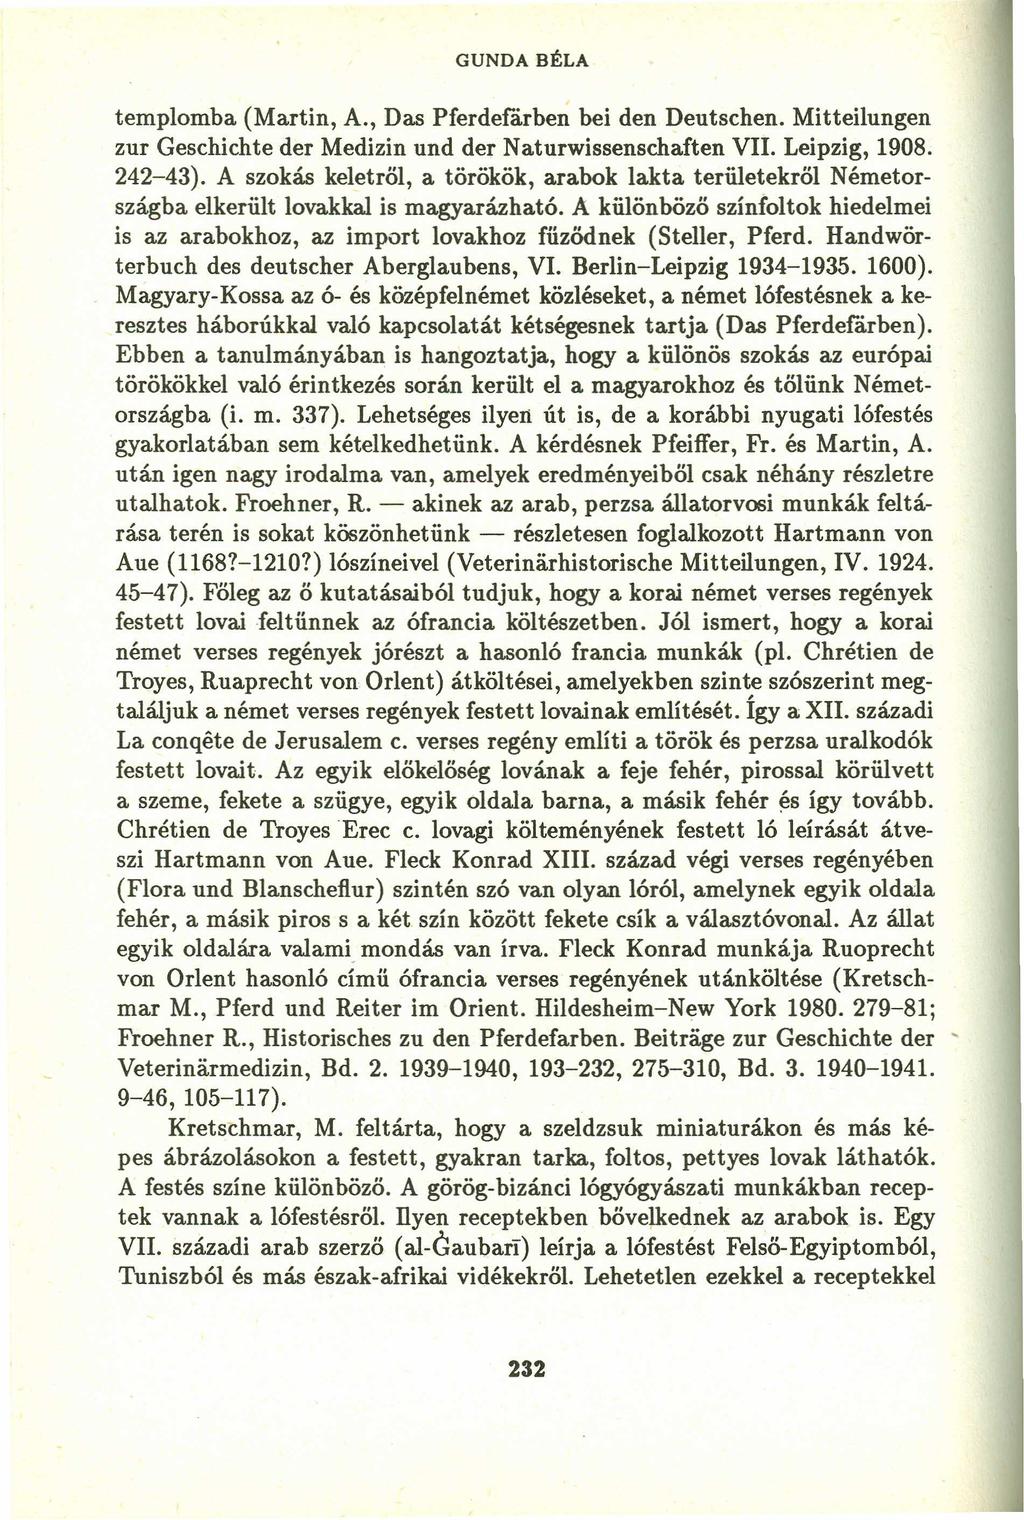 GUNDA BÉLA templomba (Martin, A., Das Pferdefárben bei den Deutschen. Mitteilungen zur Geschichte der Medizin und der Naturwissenschaften VII. Leipzig, 1908. 242-43).